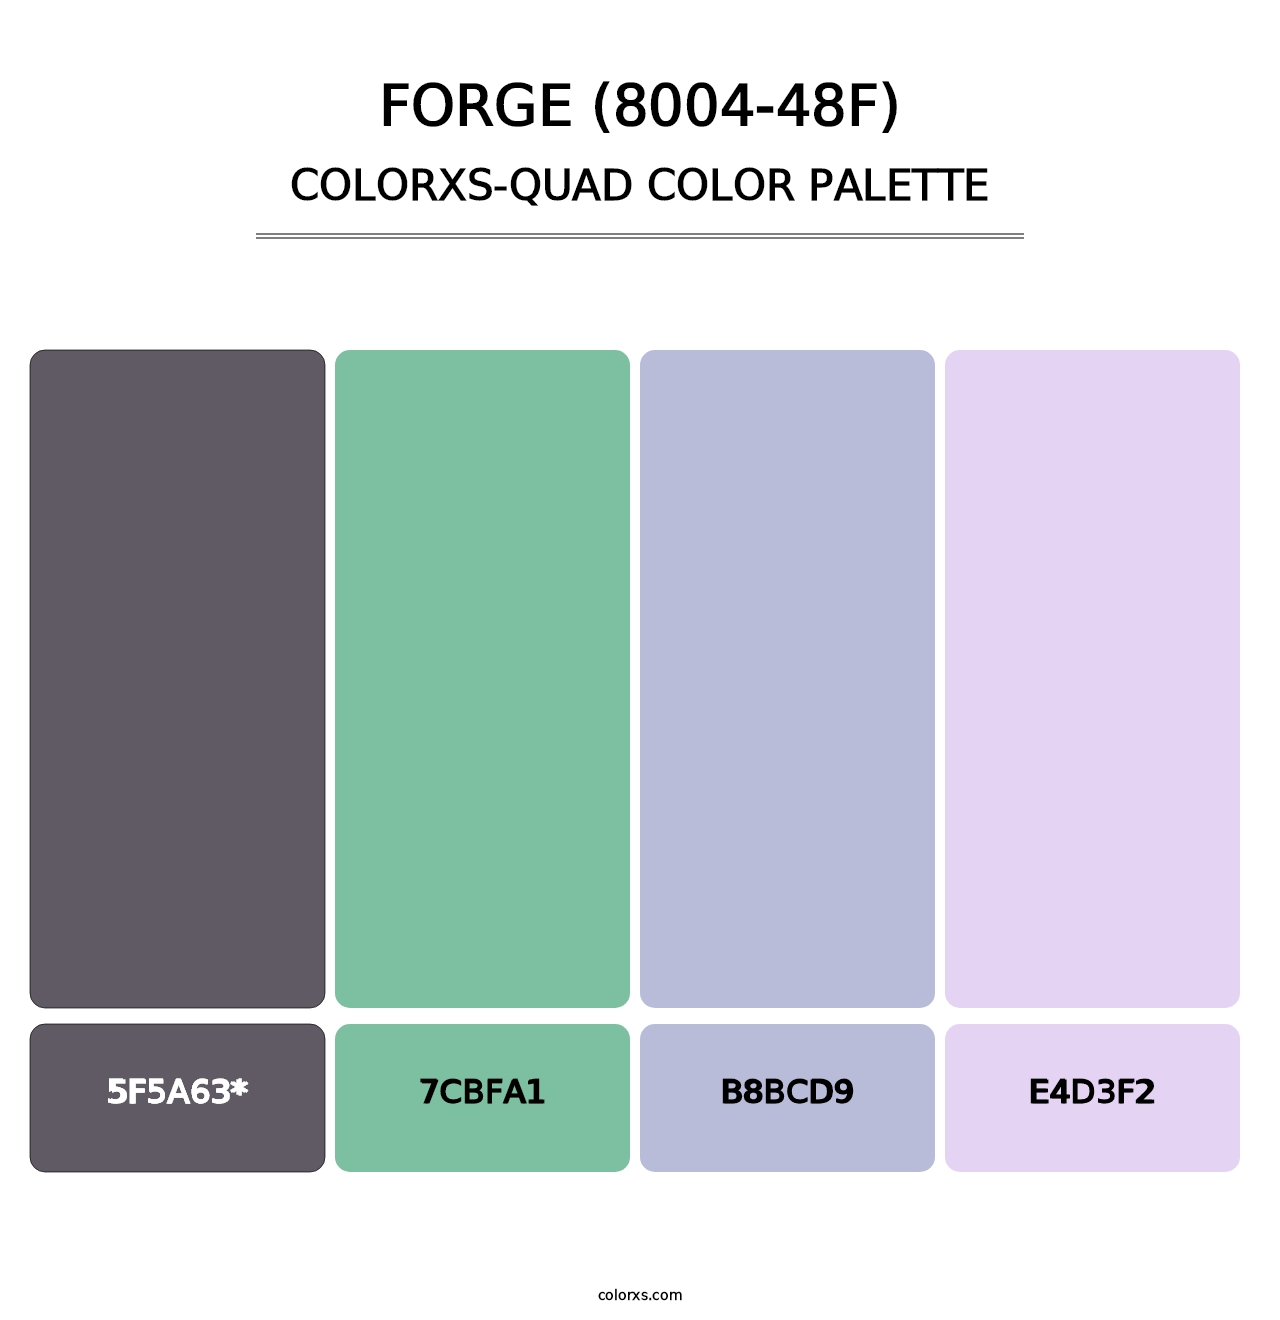 Forge (8004-48F) - Colorxs Quad Palette